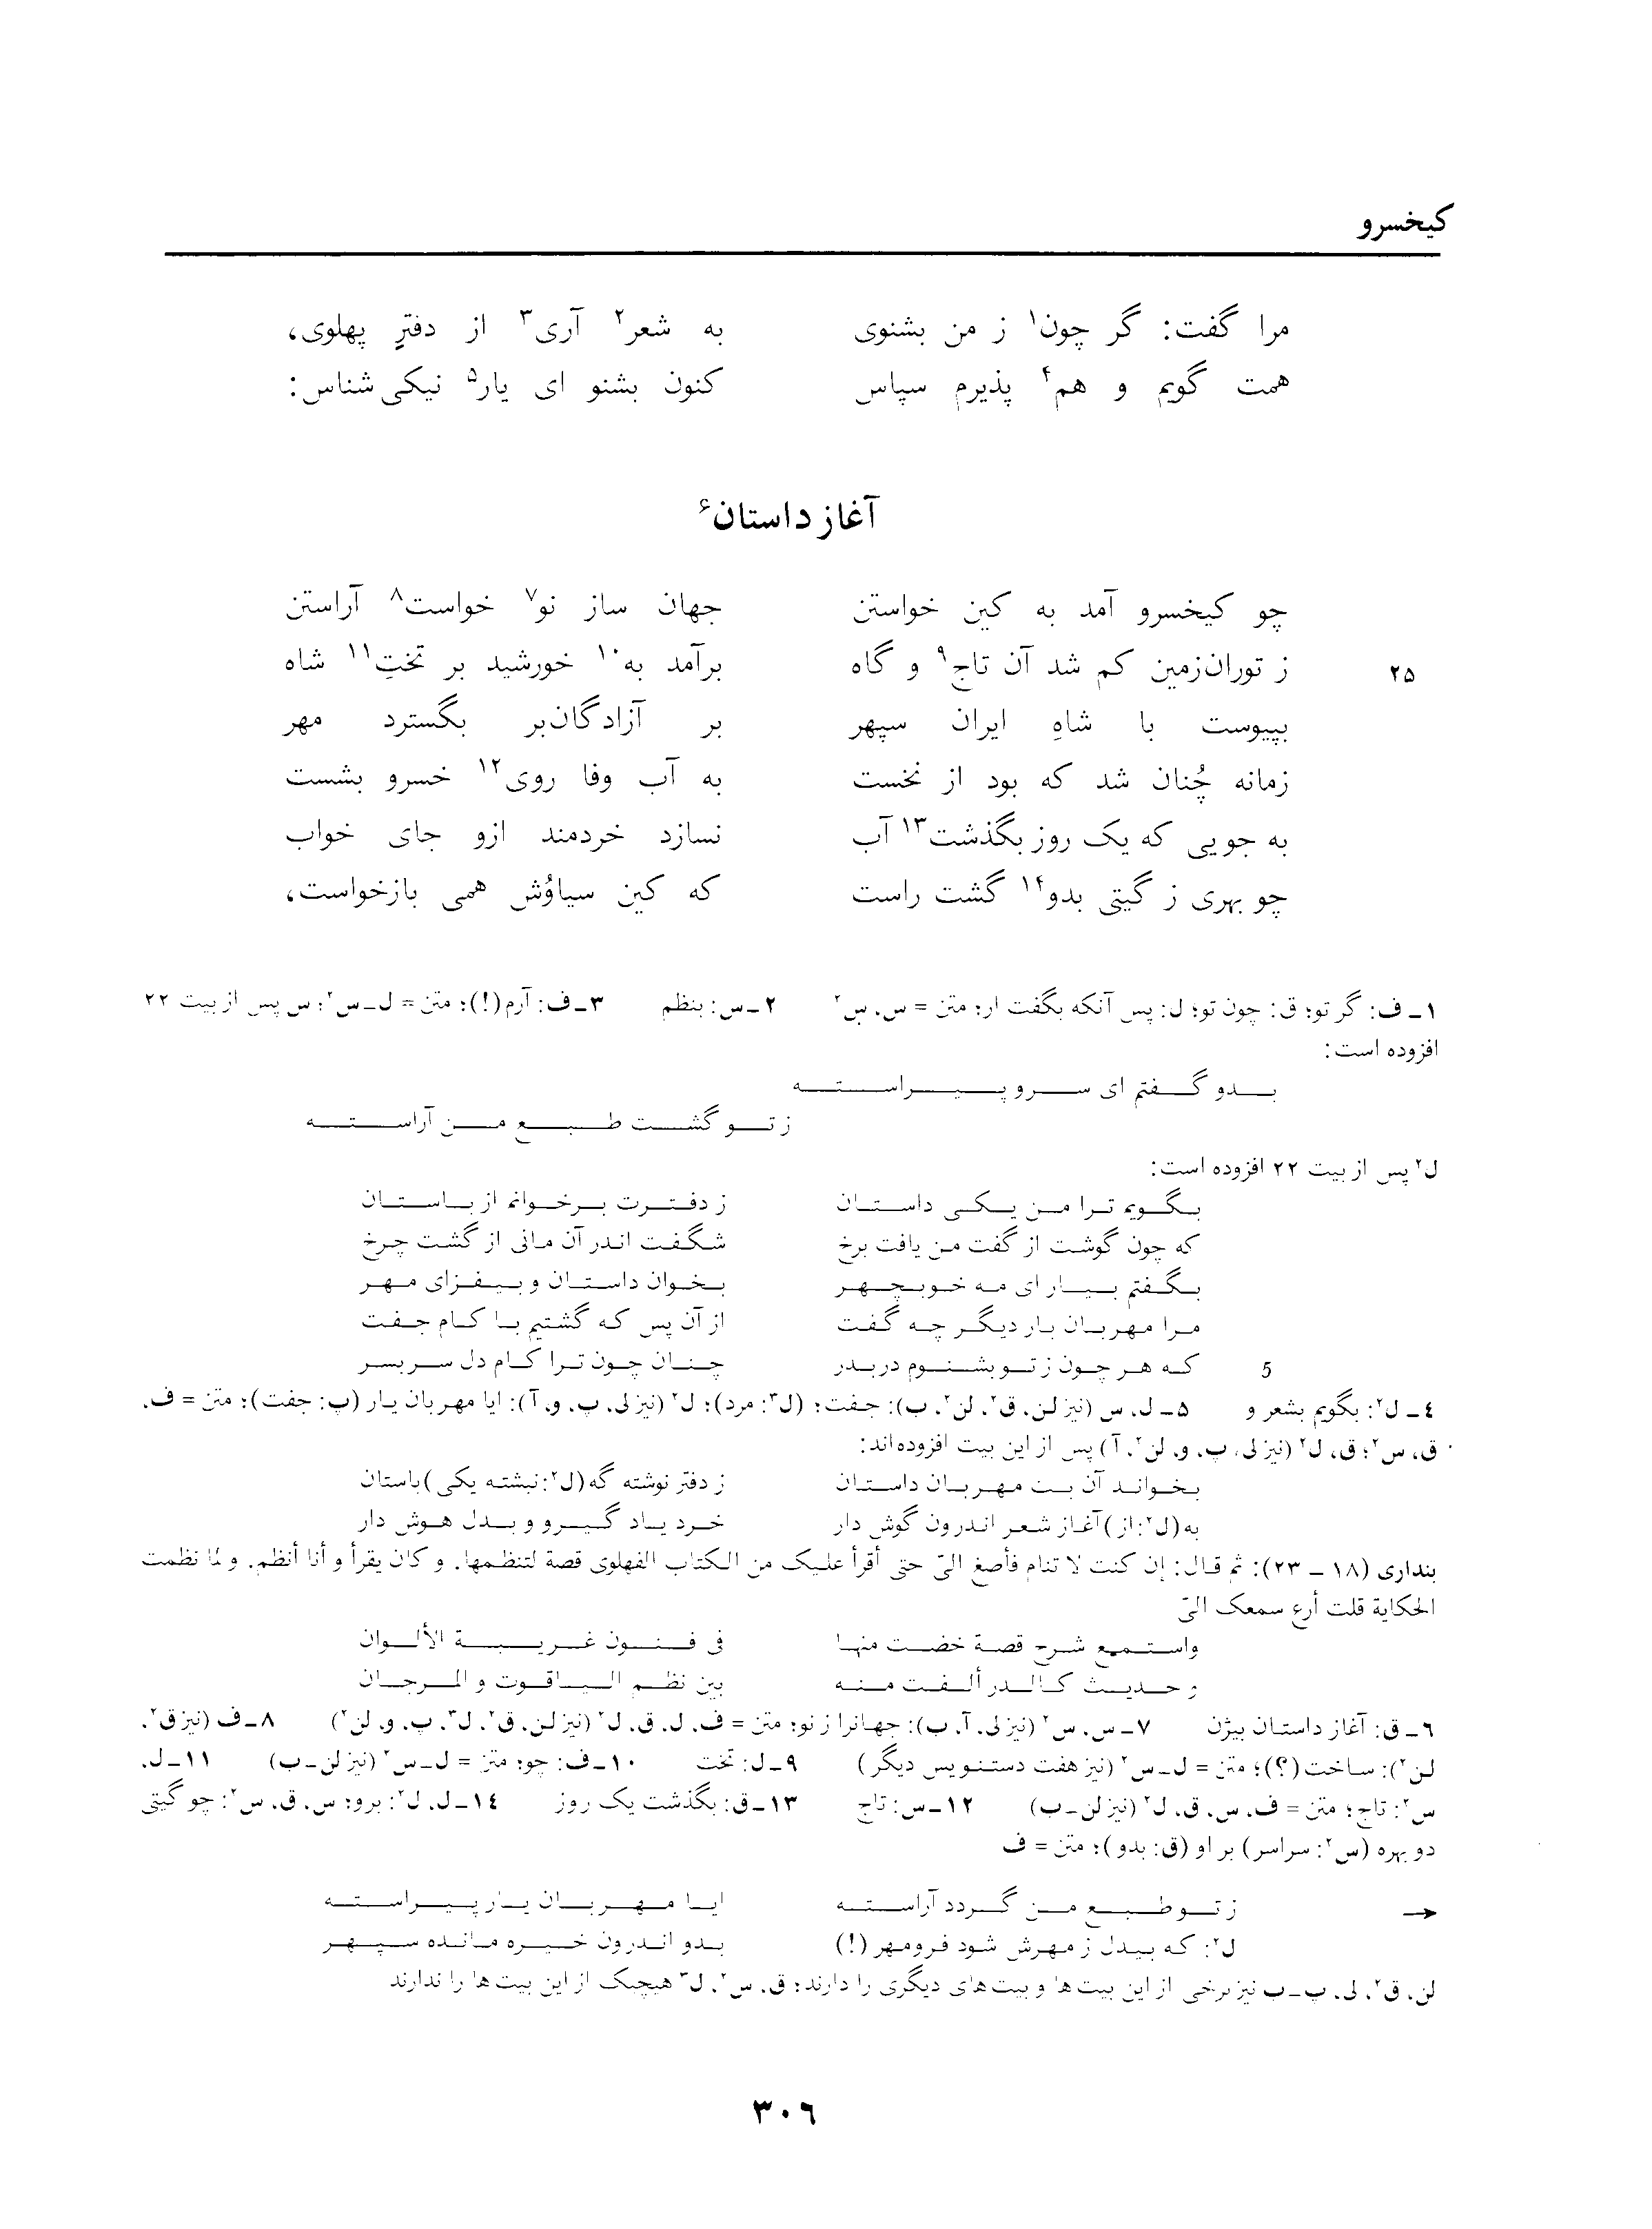 vol. 3, p. 306